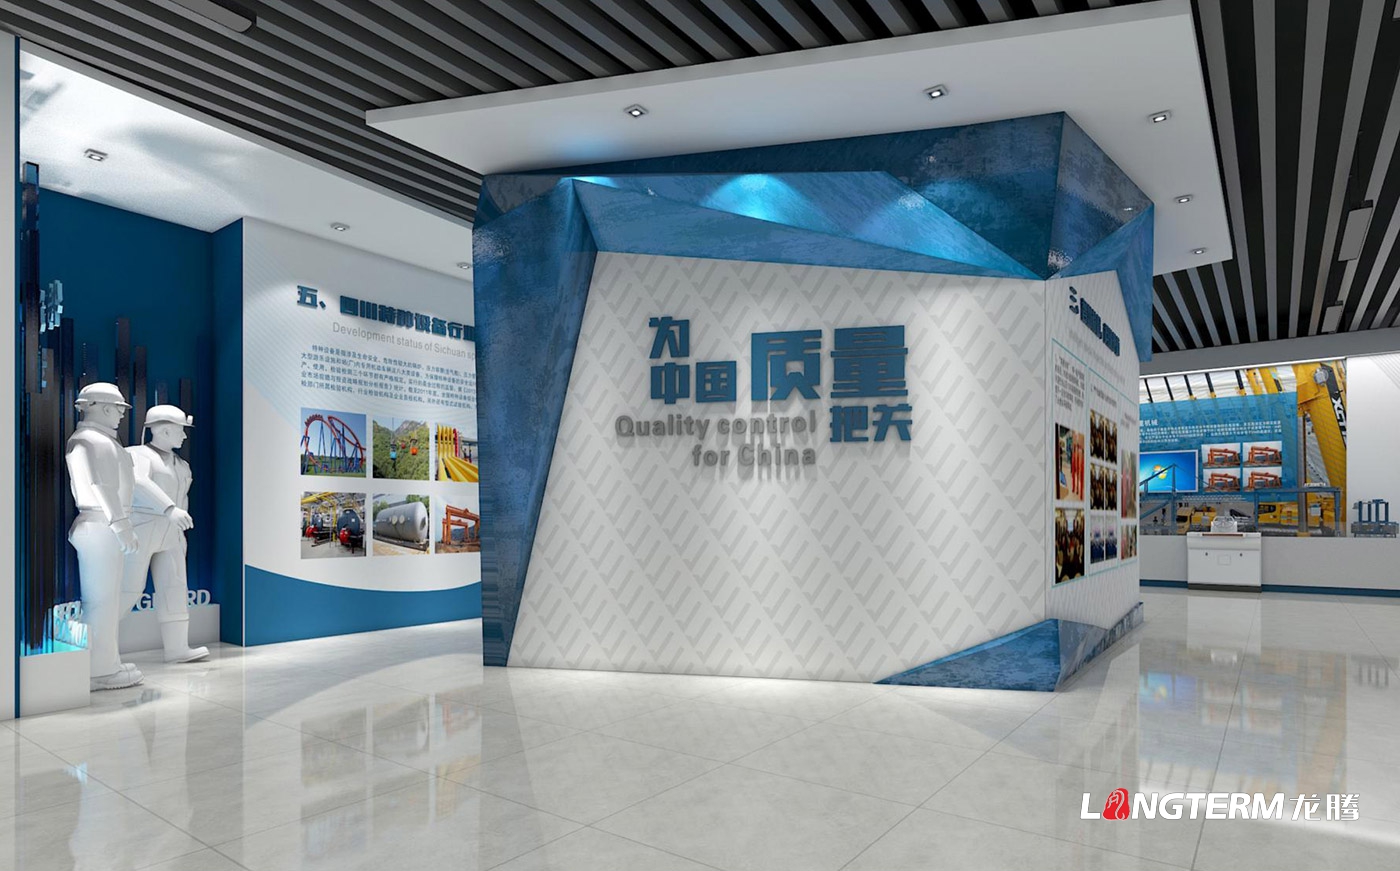 四川省特种装备磨练研究院科技效果展览室、特种装备科普展示厅、临展区策划及文化墙建设设计